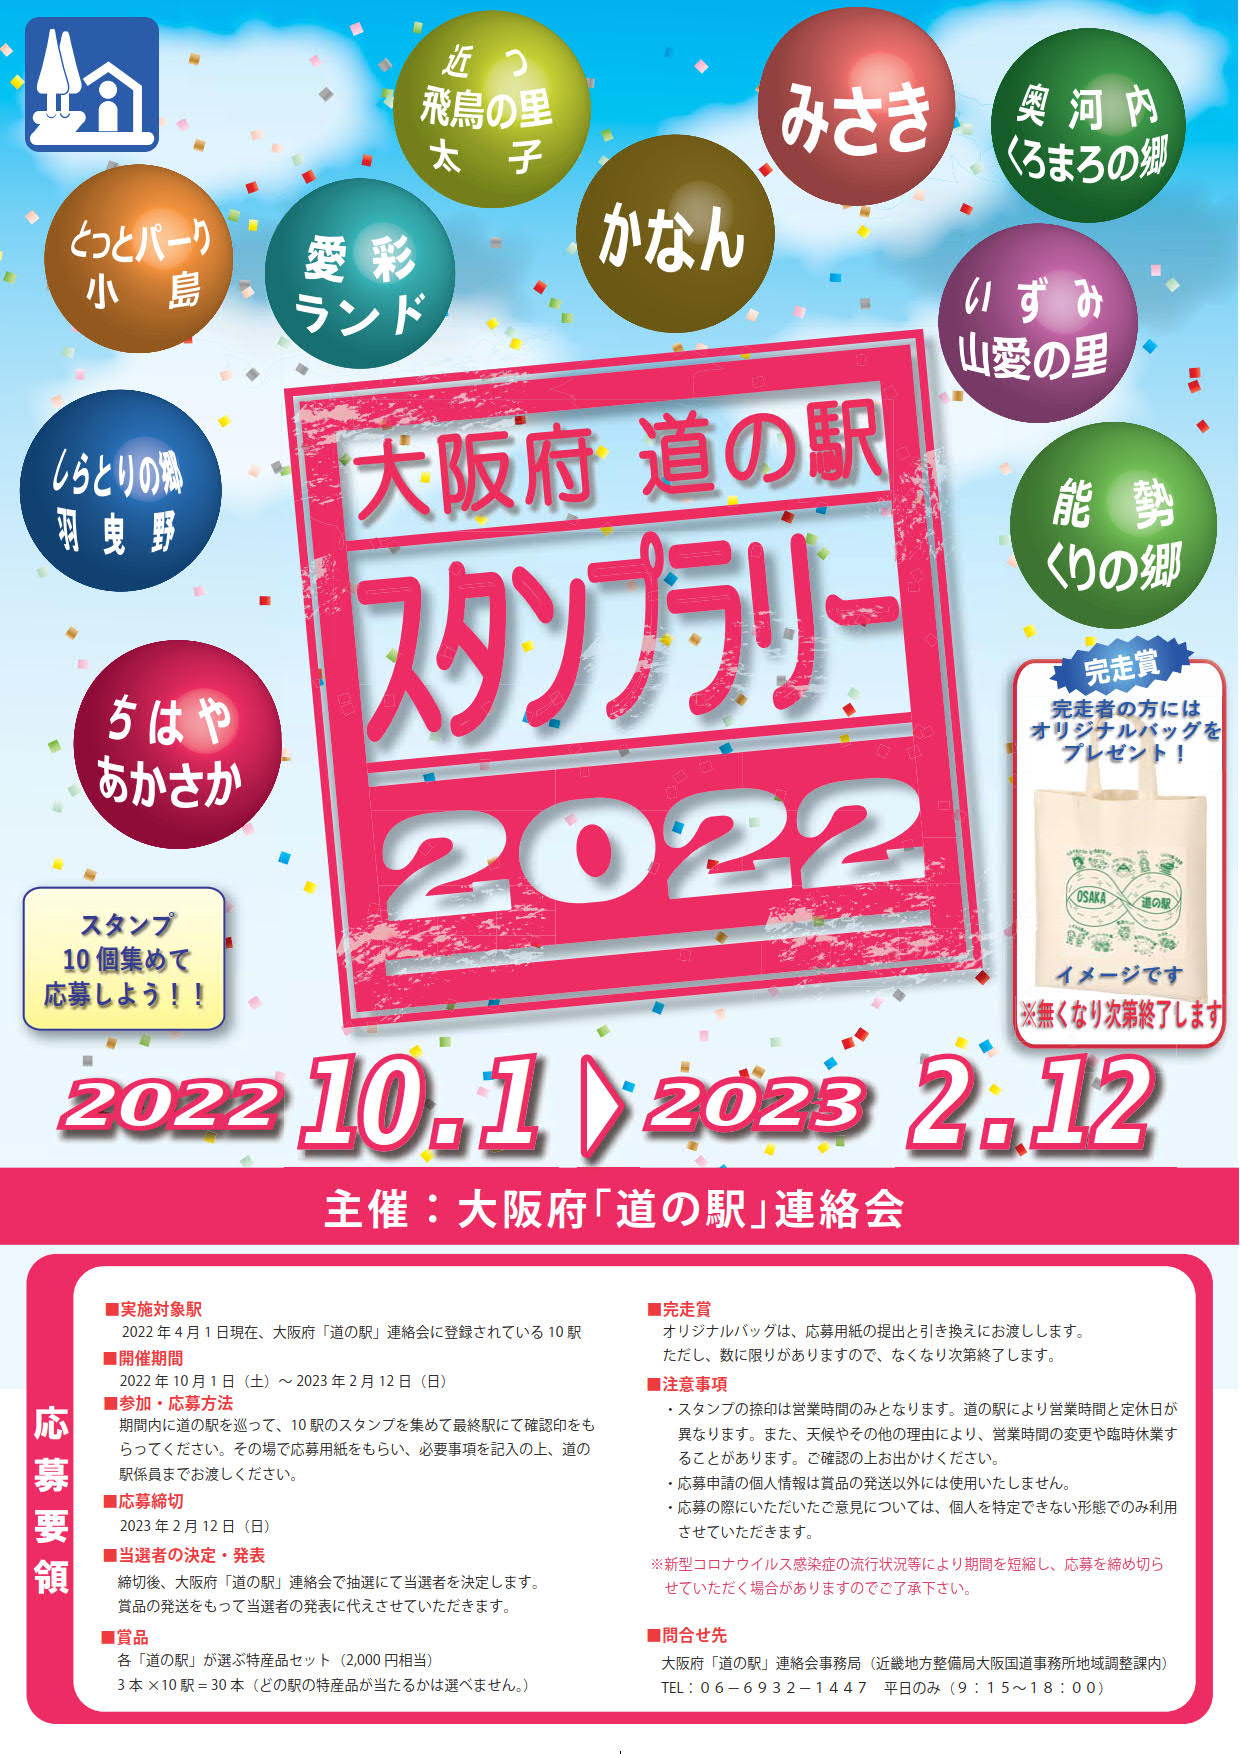 大阪府「道の駅」スタンプラリー開催！2022年10月1日～2023年2月12日